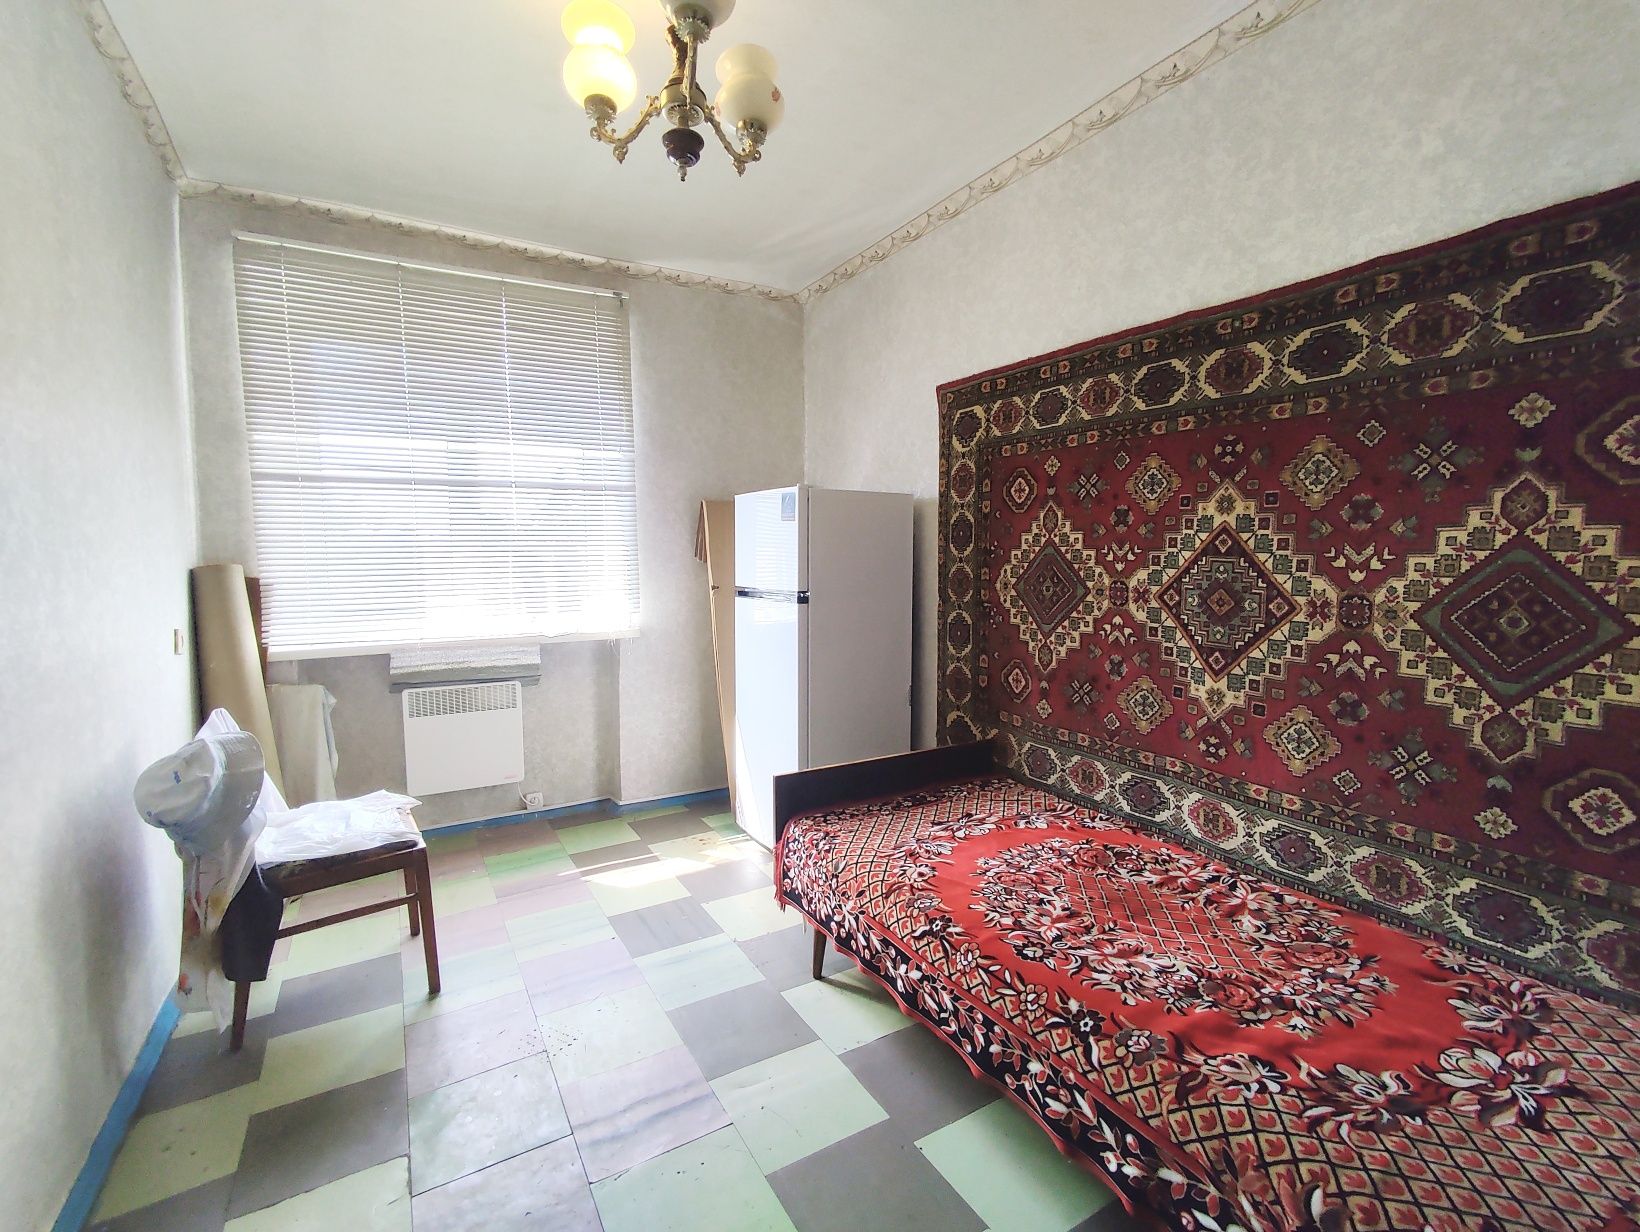 Продается 4-х комнатная квартира в Новомосковске, район СШ-8